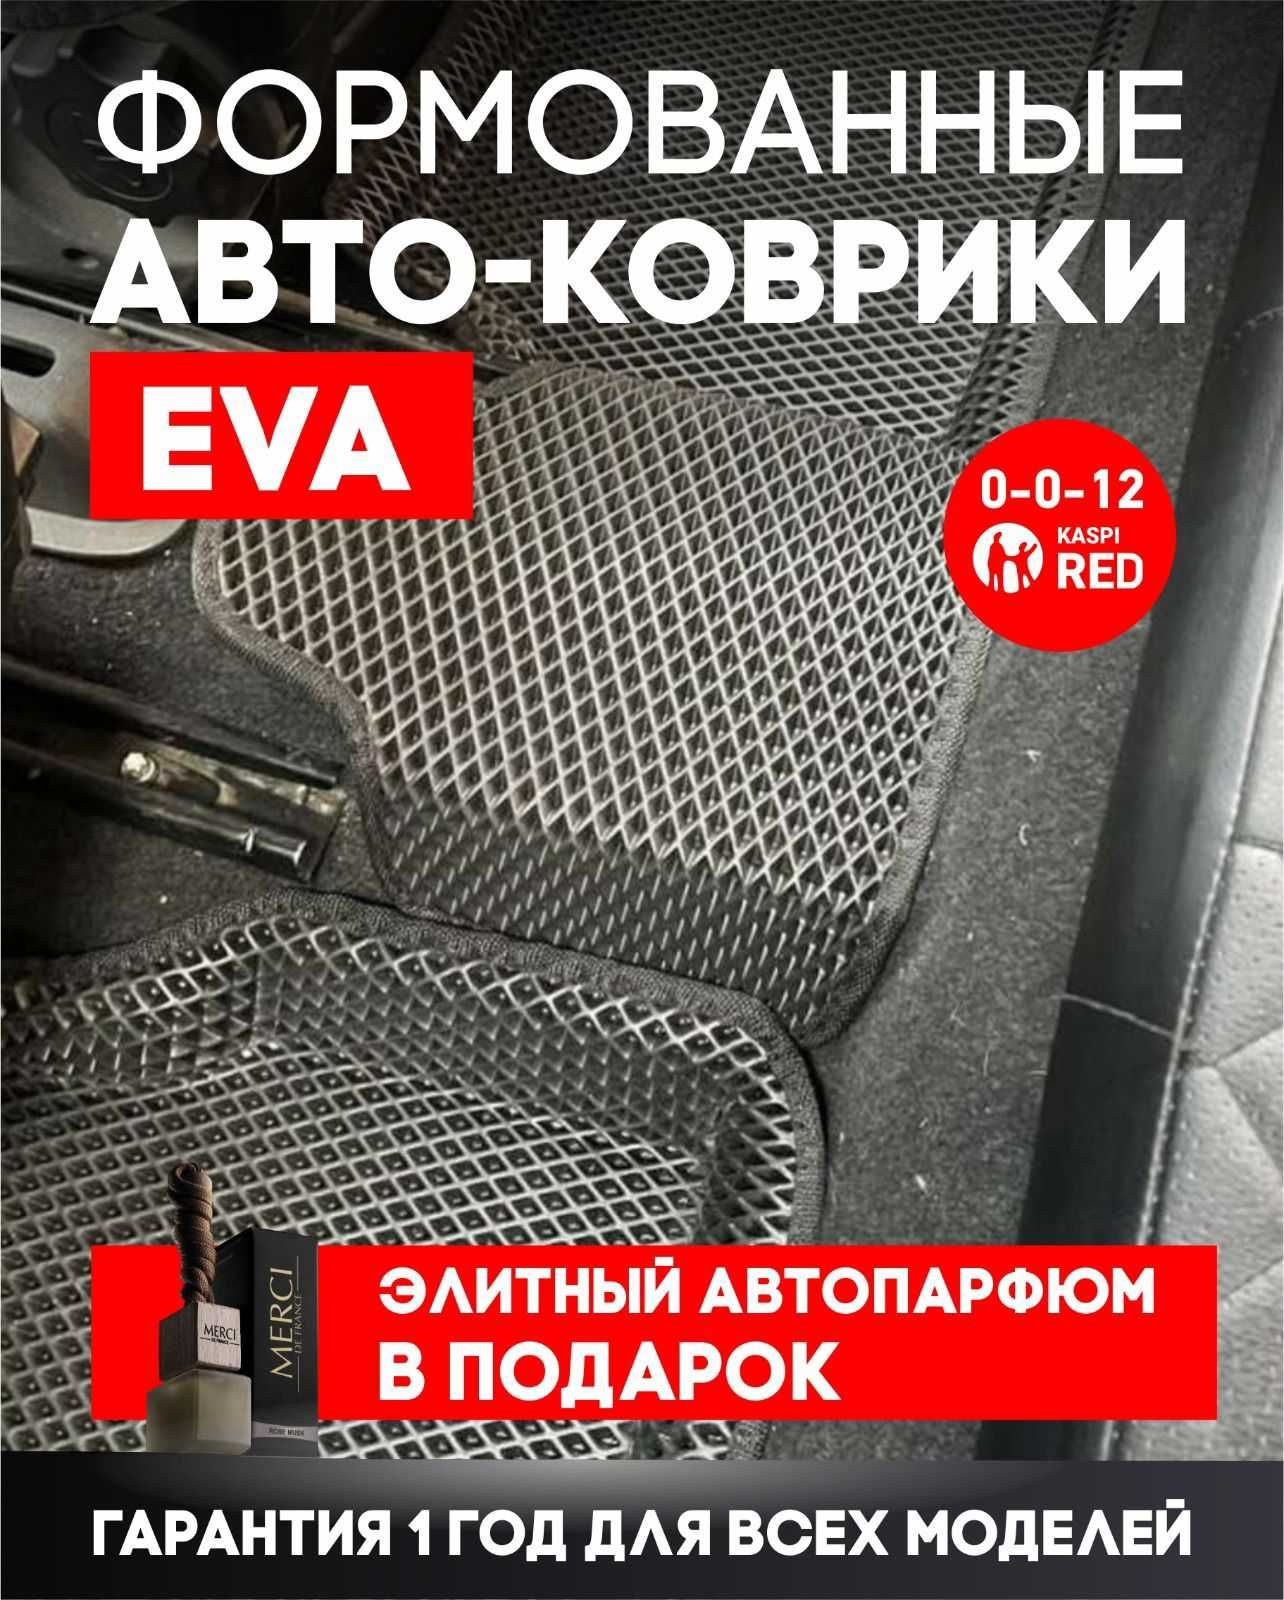 ФОРМОВАНЫЕ коврики(полики EVA ЭВА,ЕВА)от производителя №1 в Казахстане